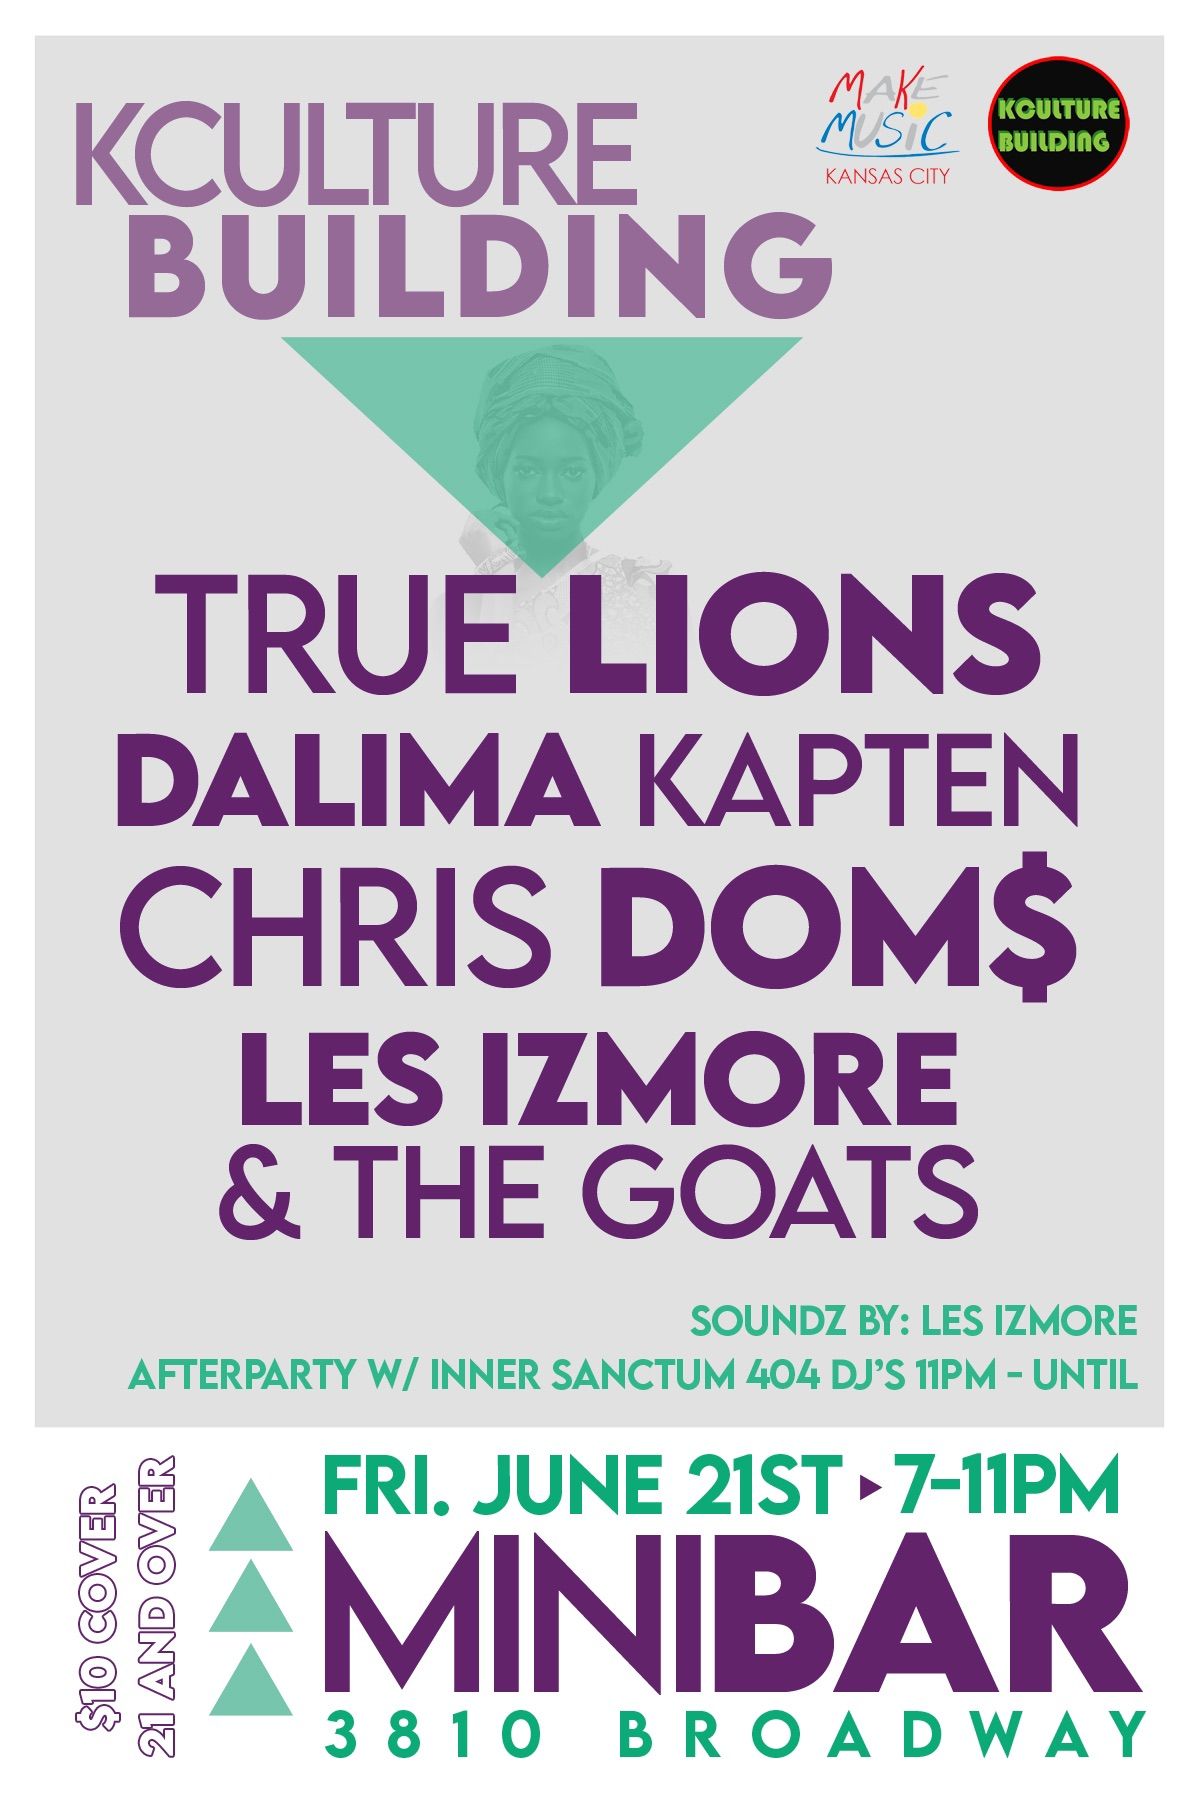 KCulture Building w\/ Dalima Kapten, True Lions, Chris Dom$, Les Izmore & The GOATS  